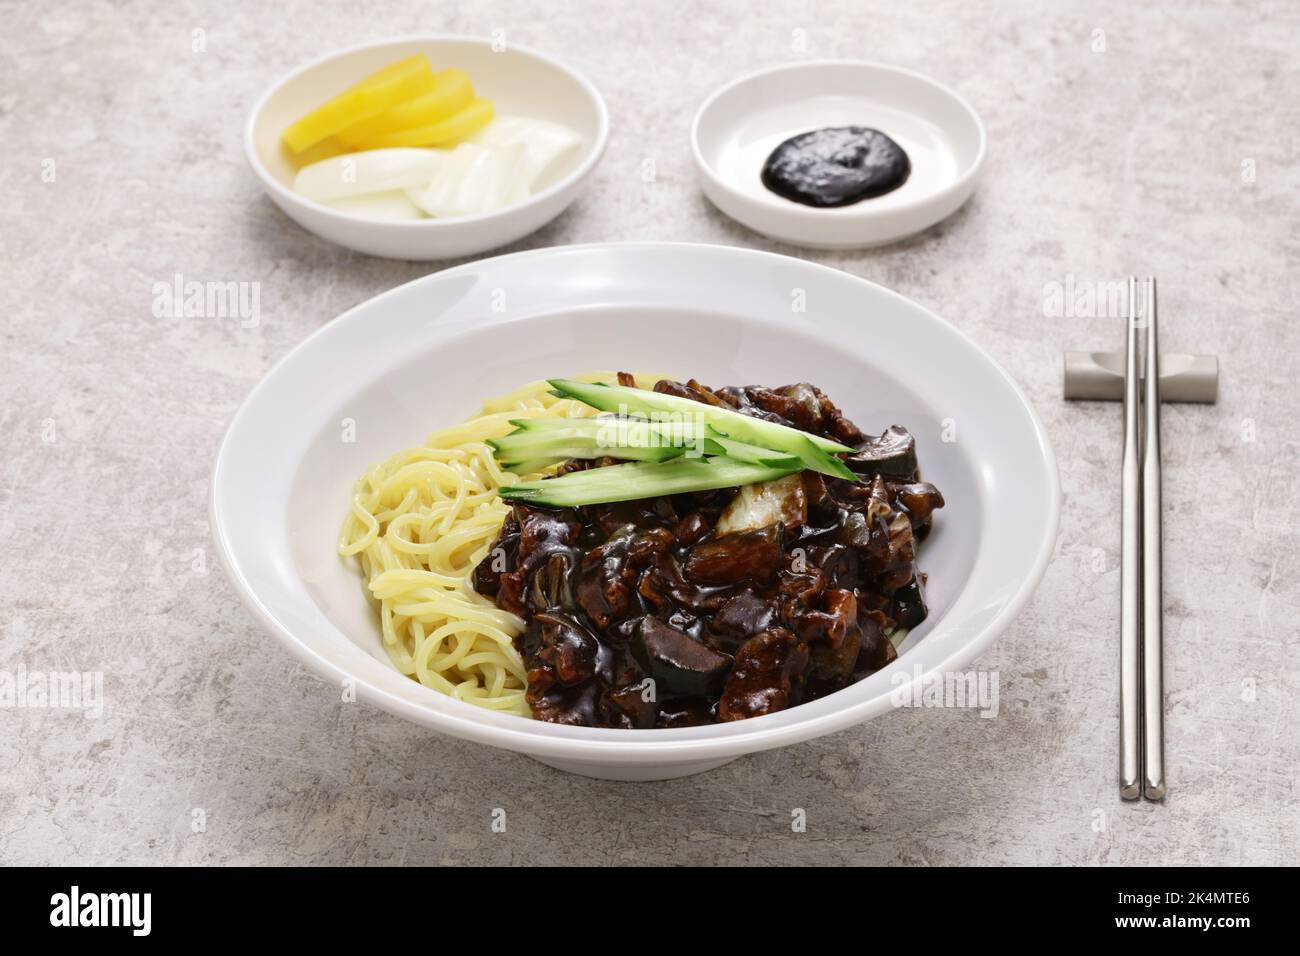 https://c8.alamy.com/compit/2k4mte6/il-jajangmyeon-e-un-piatto-cinese-coreano-conosciuto-come-noodle-di-fagioli-neri-coreani-2k4mte6.jpg